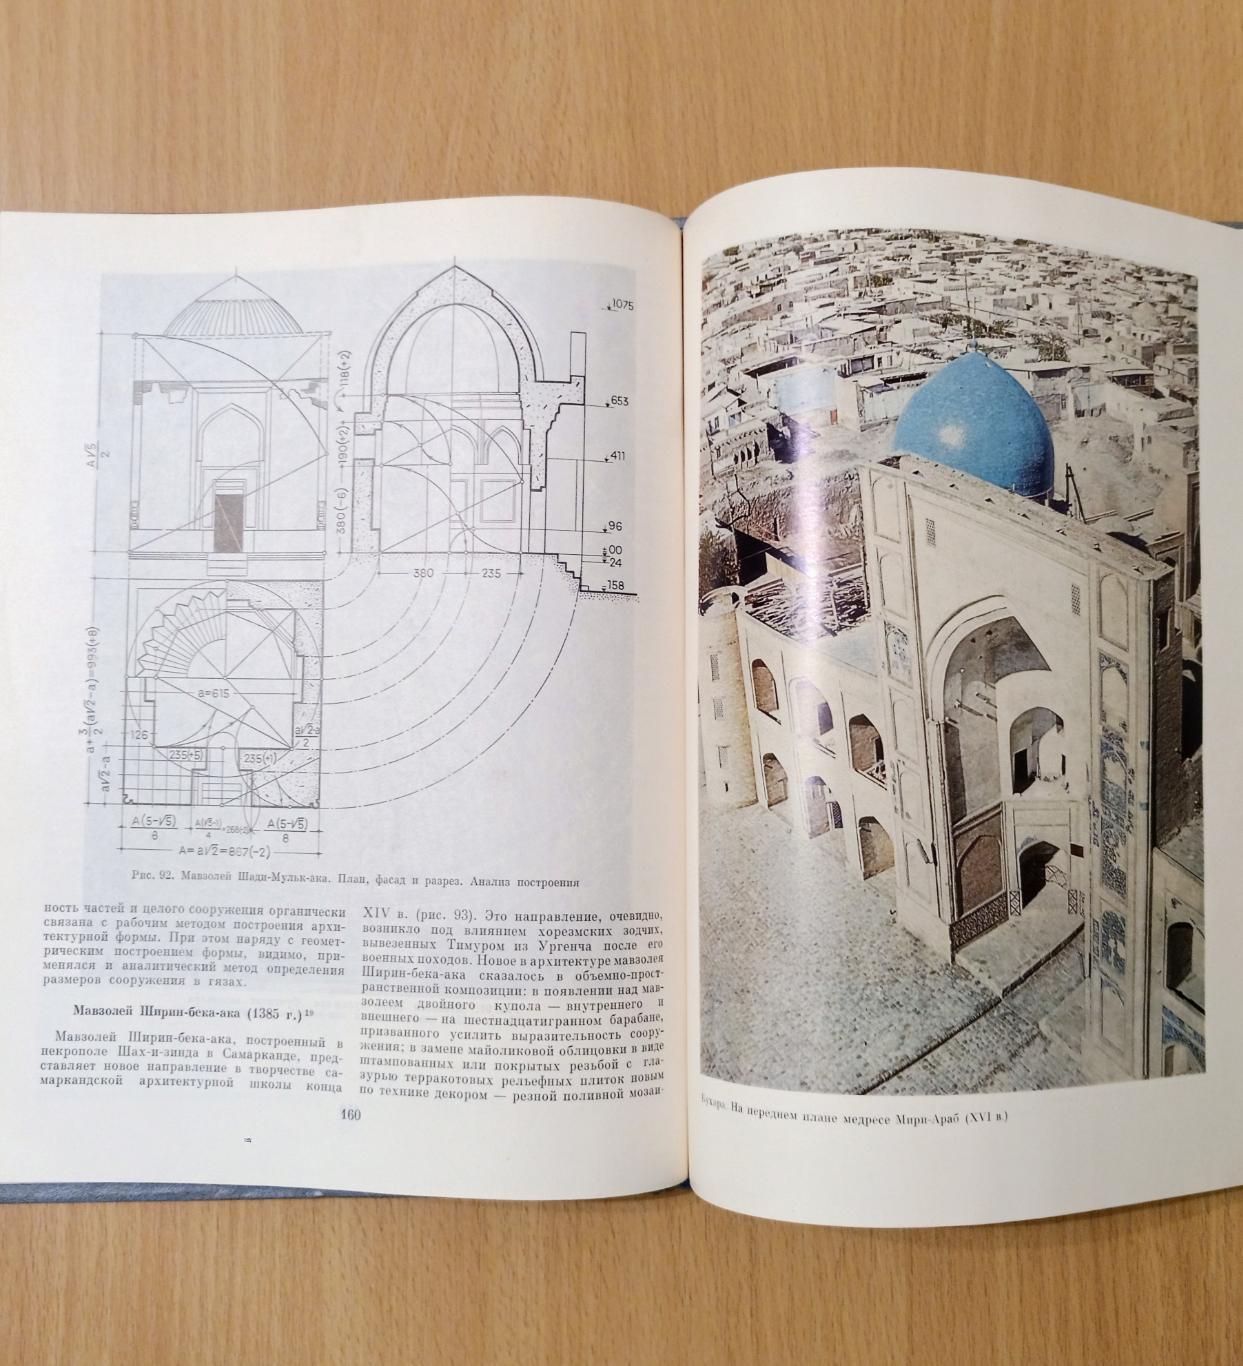 Геометрическая гармонизация в архитектуре Средней Азии 4